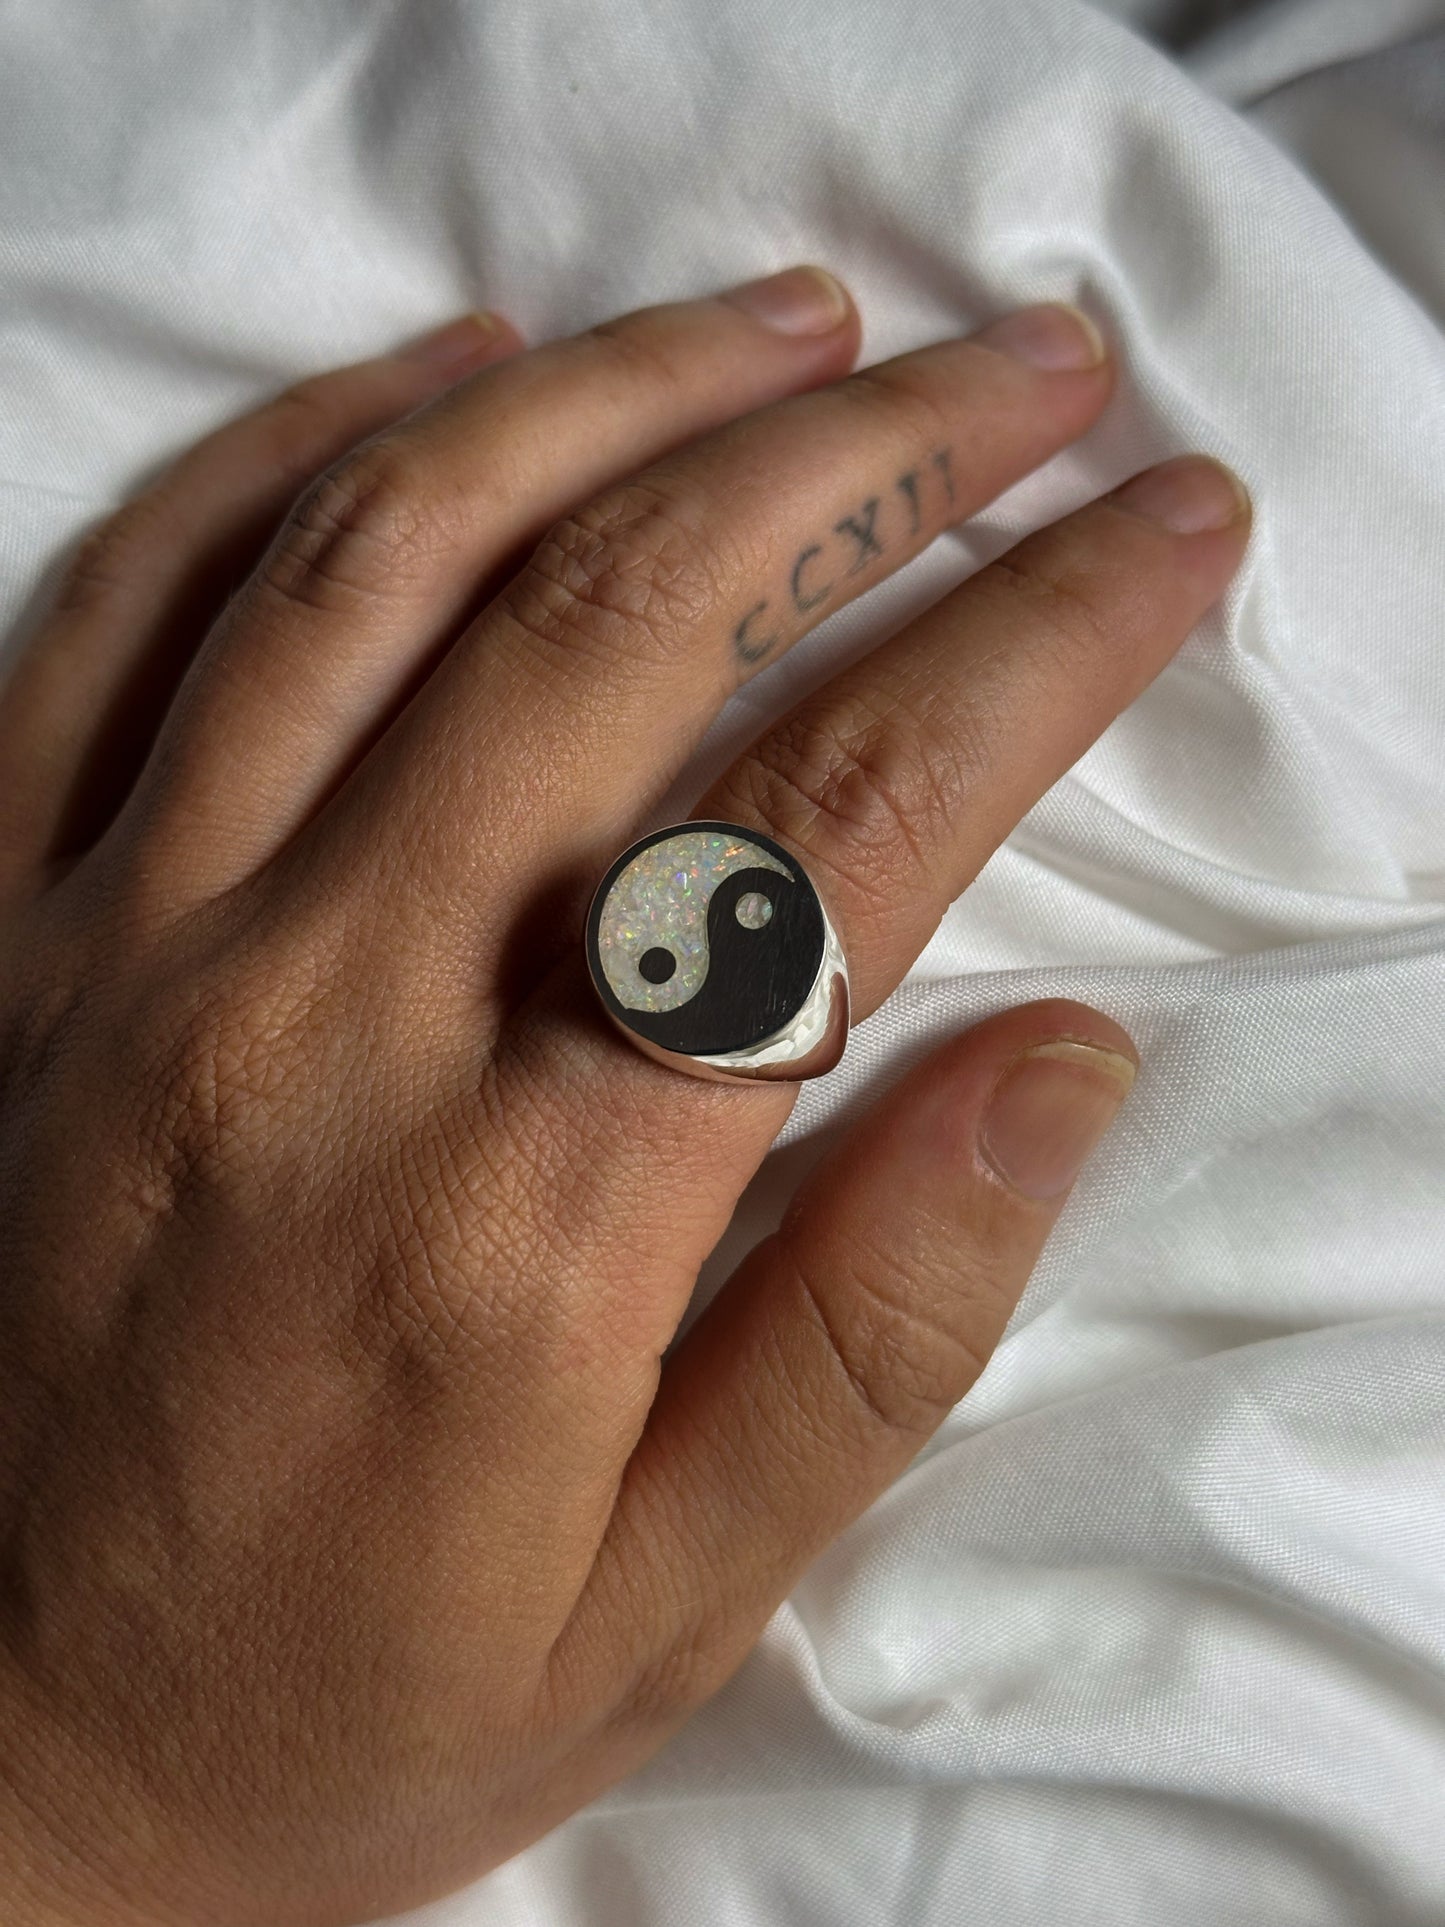 Yin-Yang & Opal ring